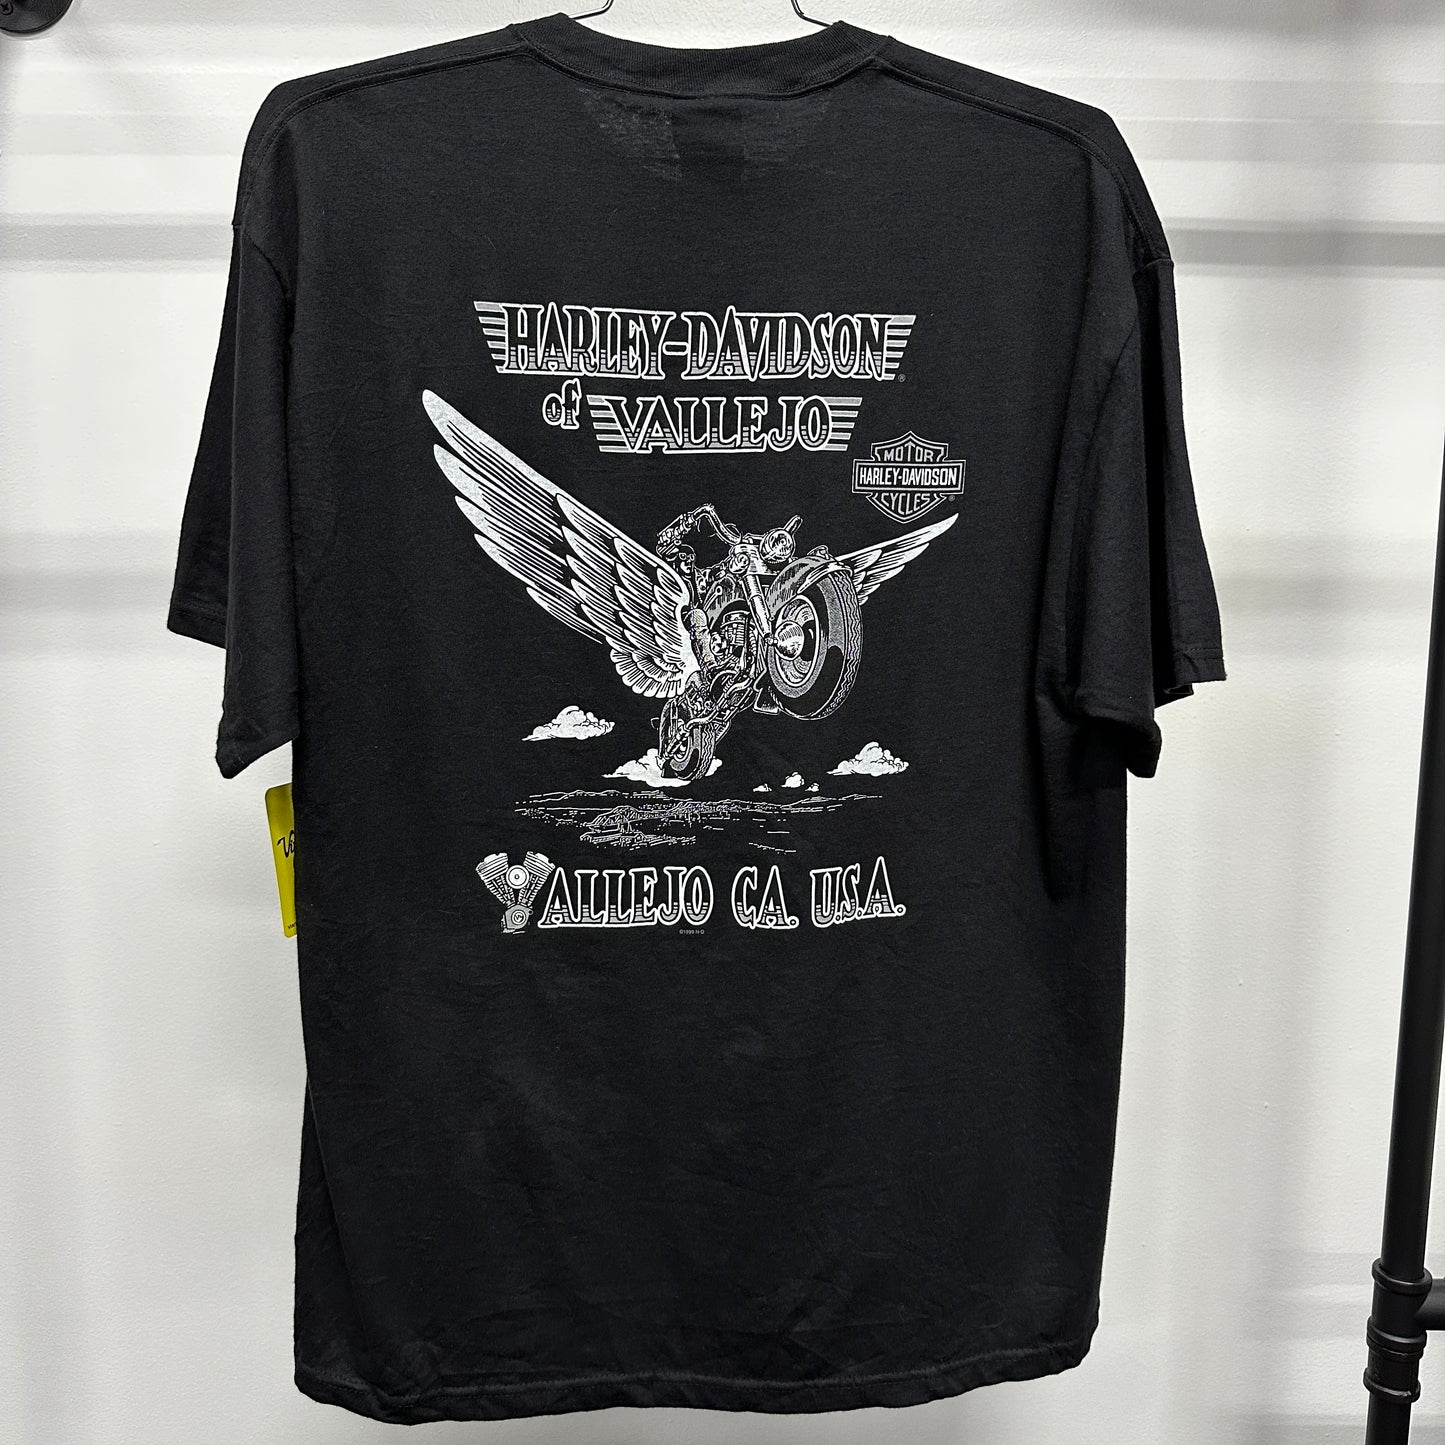 '05 "Got Harley?" Black Harley Davidson T-shirt sz XL